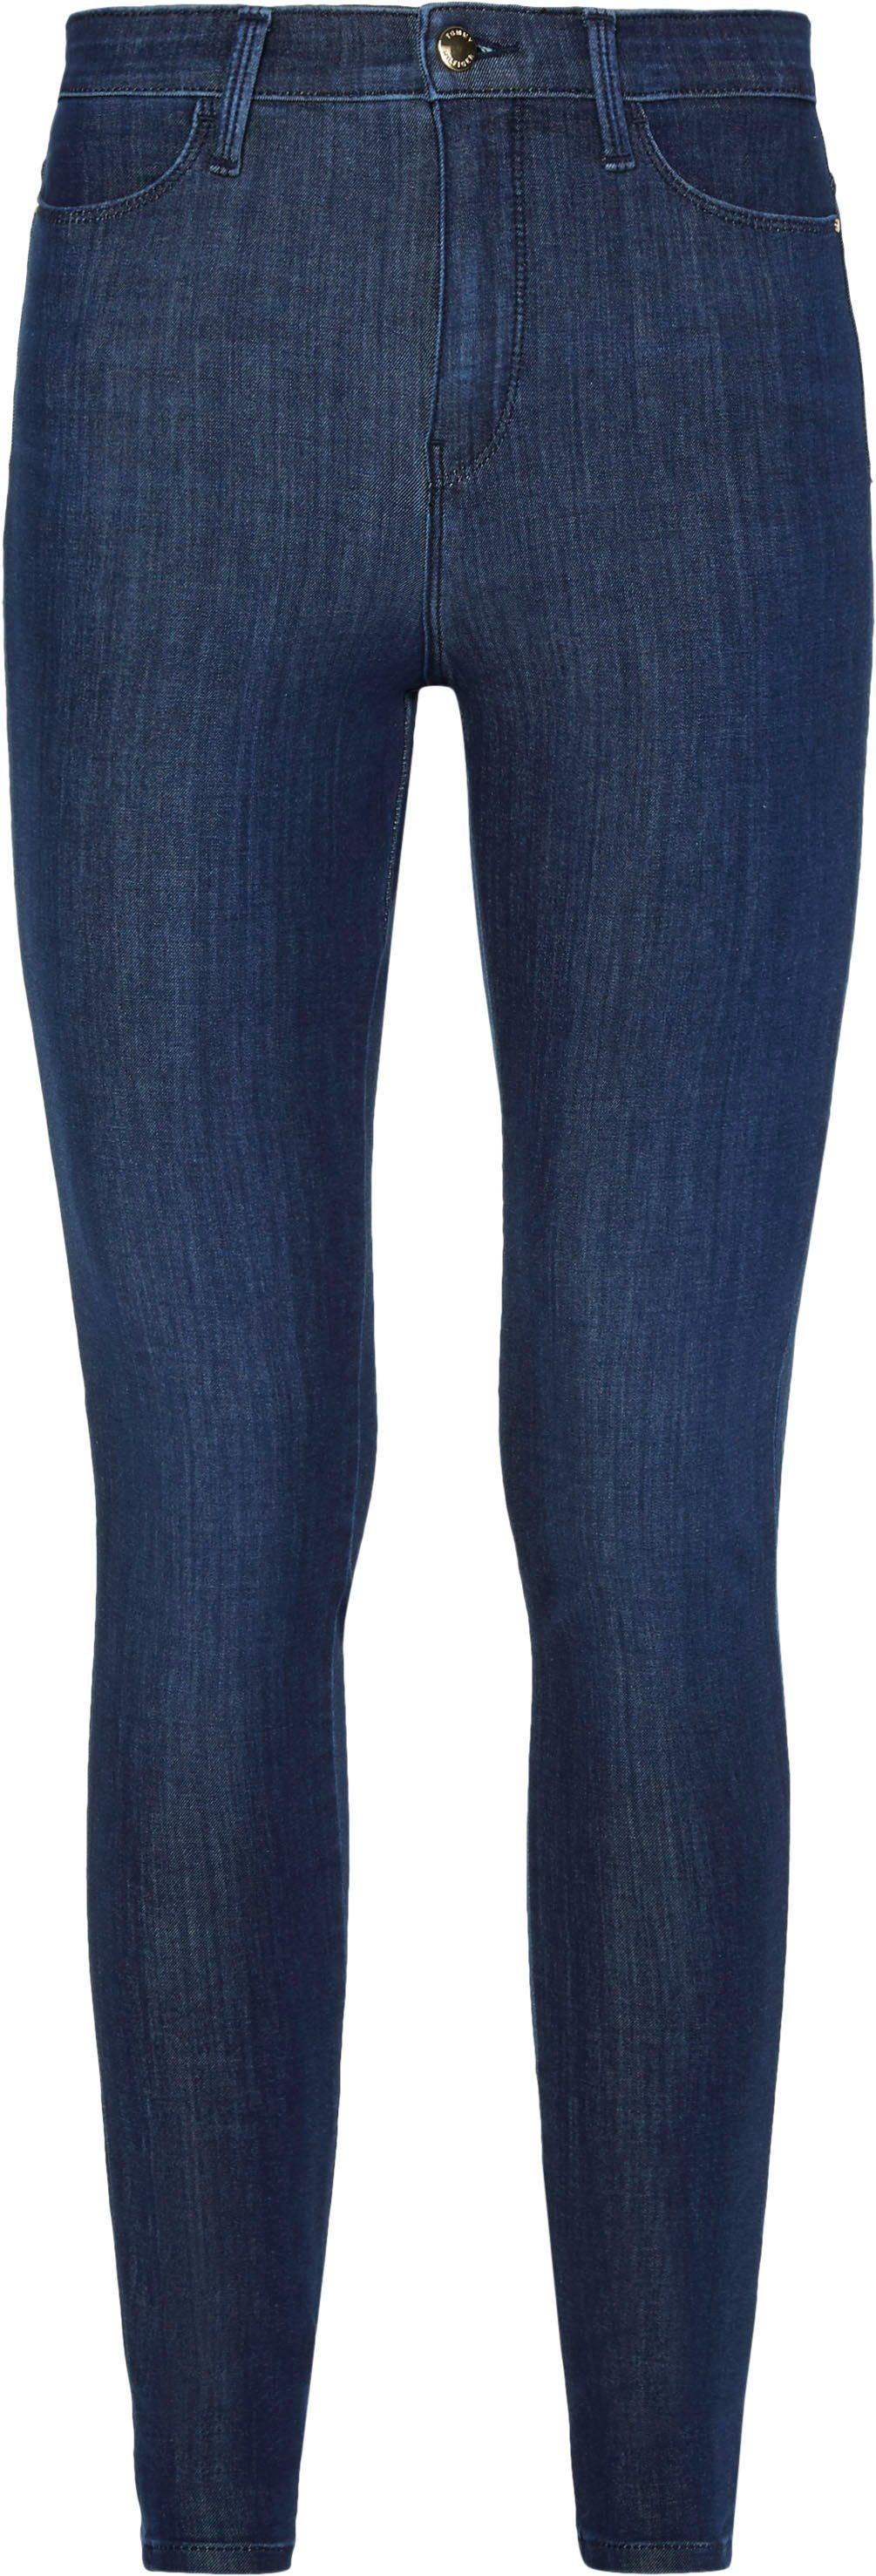 Tommy Hilfiger Skinny-fit-Jeans »Sculpt U Skinny HW Ila« mit Shaping  Effekt, macht optisch zwei Größen schmaler online kaufen | OTTO